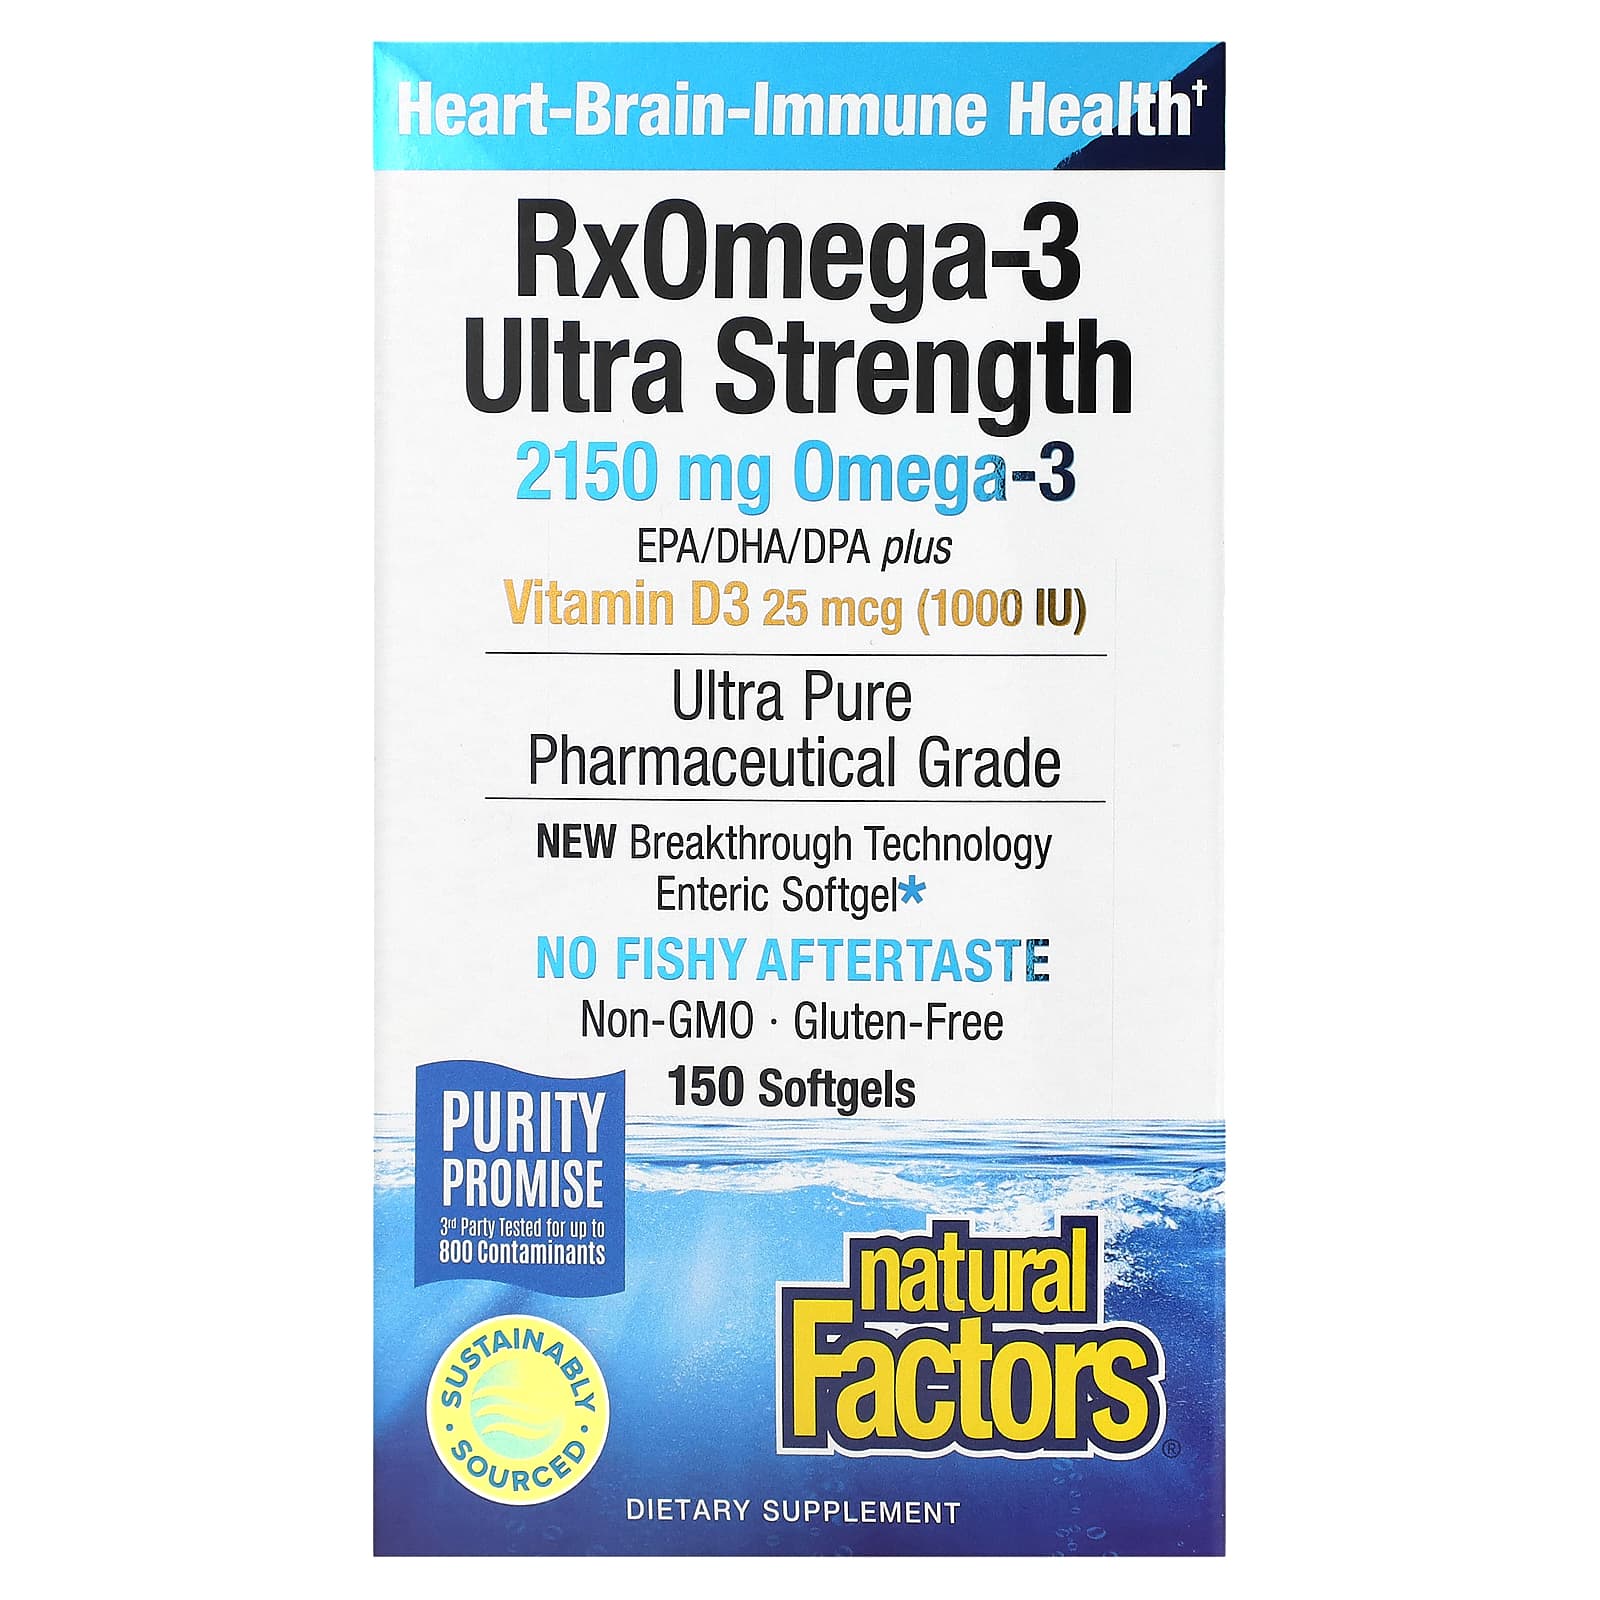 Natural Factors Ultra Strength, RxOmega-3, With Vitamin D3, 900 Mg EPA/DHA, 150 Enteripure Softgels